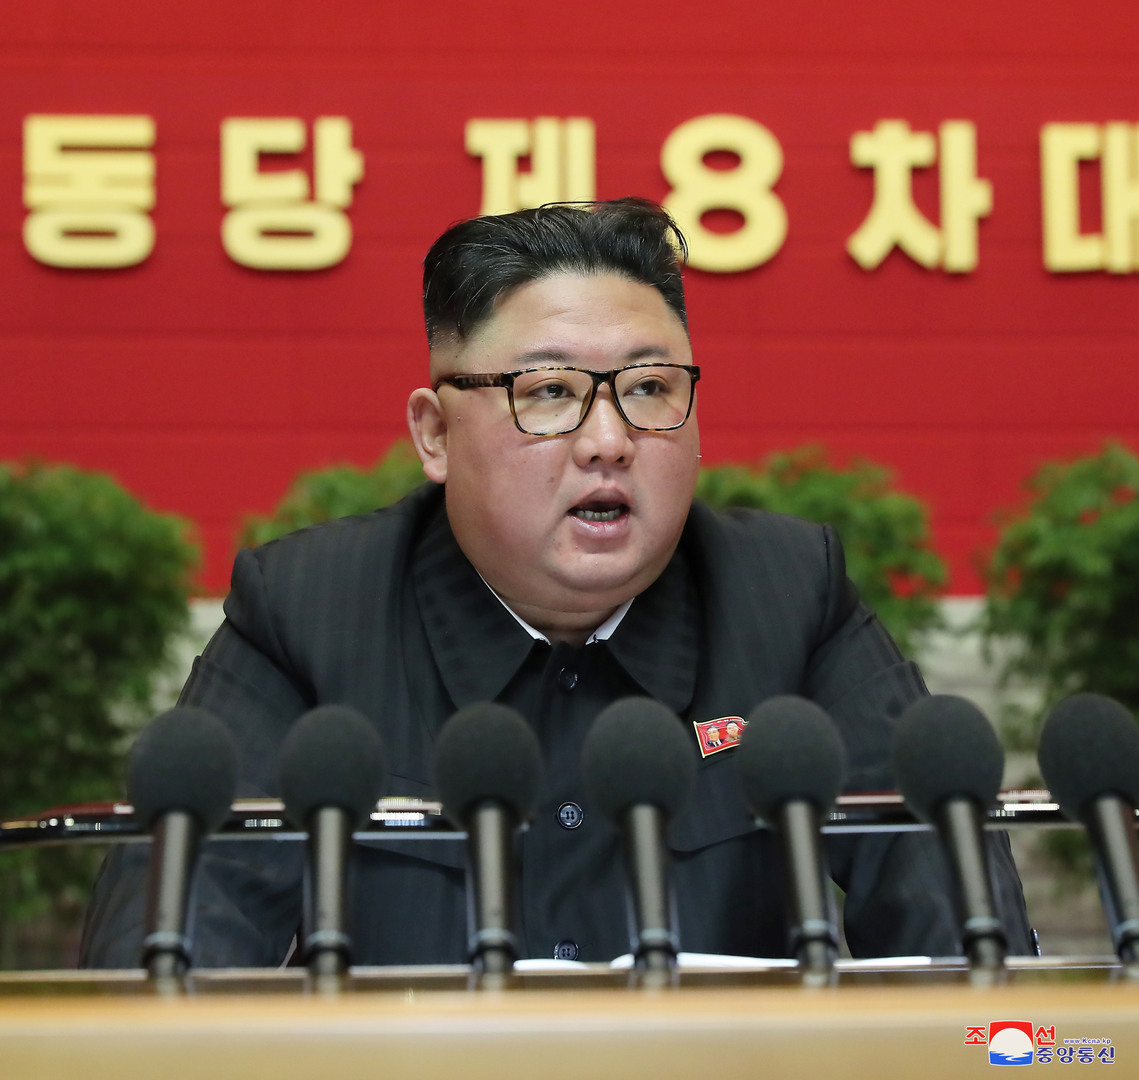 رئيس كوريا الشمالية يهدد بتدمير جيش كوريا الجنوبية وسلطتها إذا 